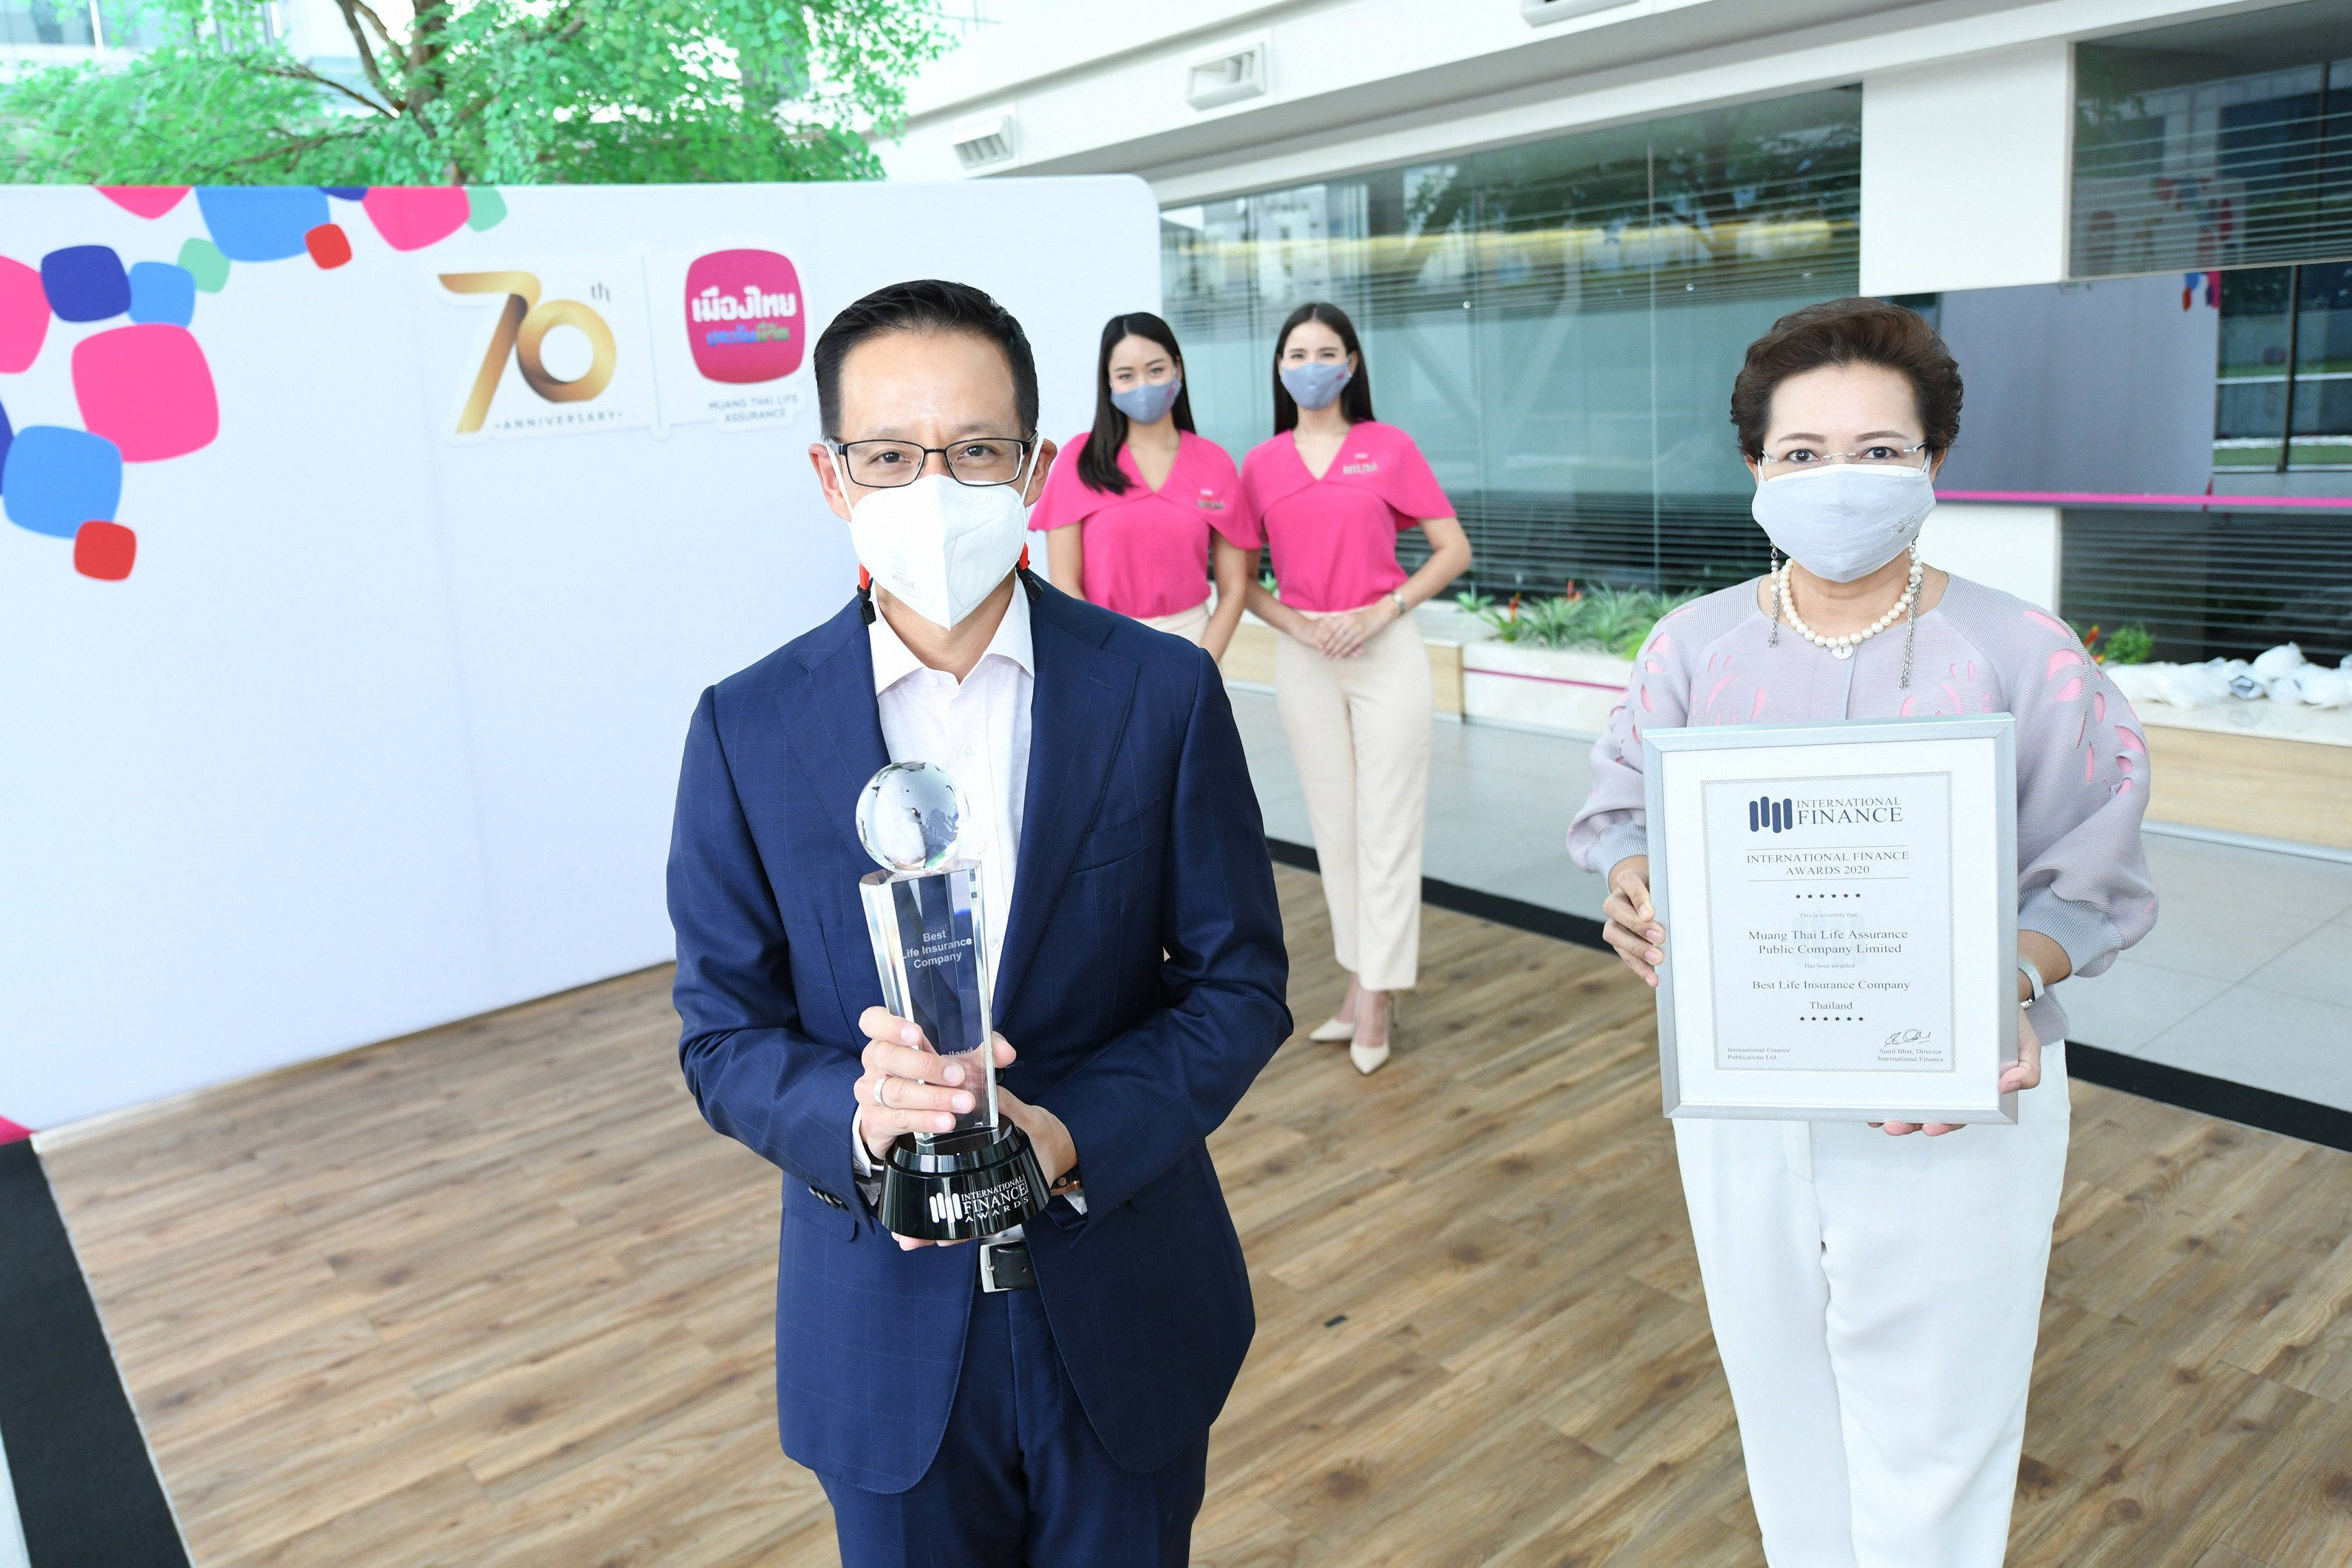 เมืองไทยประกันชีวิต คว้ารางวัล “Best Life Insurance Company- Thailand 2020” ความภาคภูมิใจระดับสากล เป็นปีที่ 3